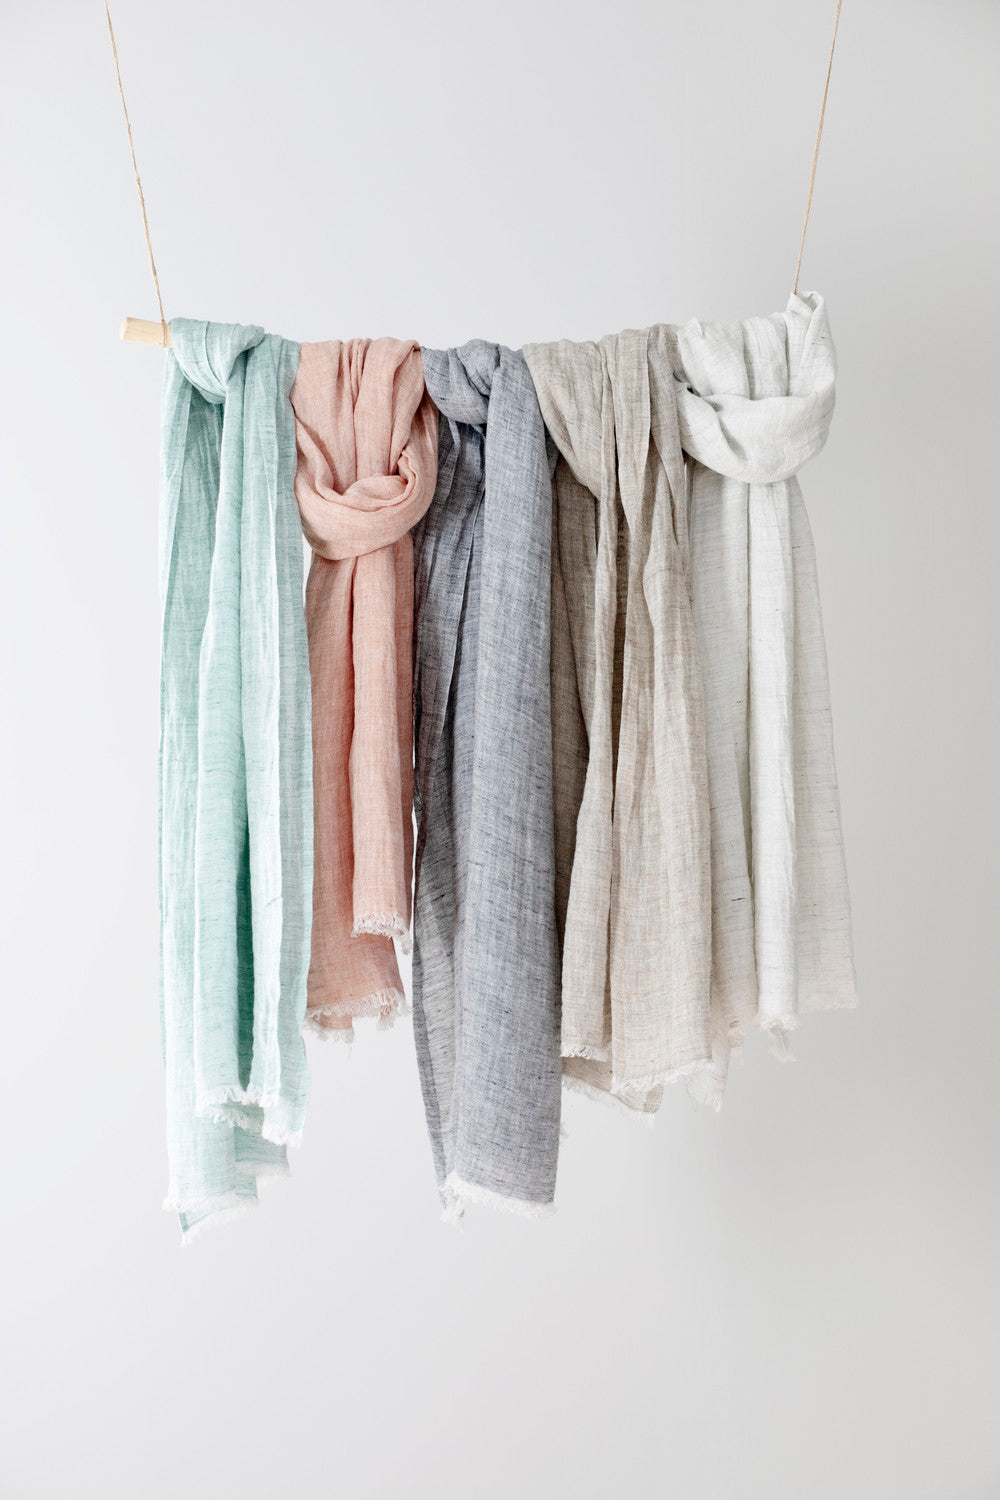 LAPUAN KANKURIT LEMPI Linen scarf  (5 COLORS)